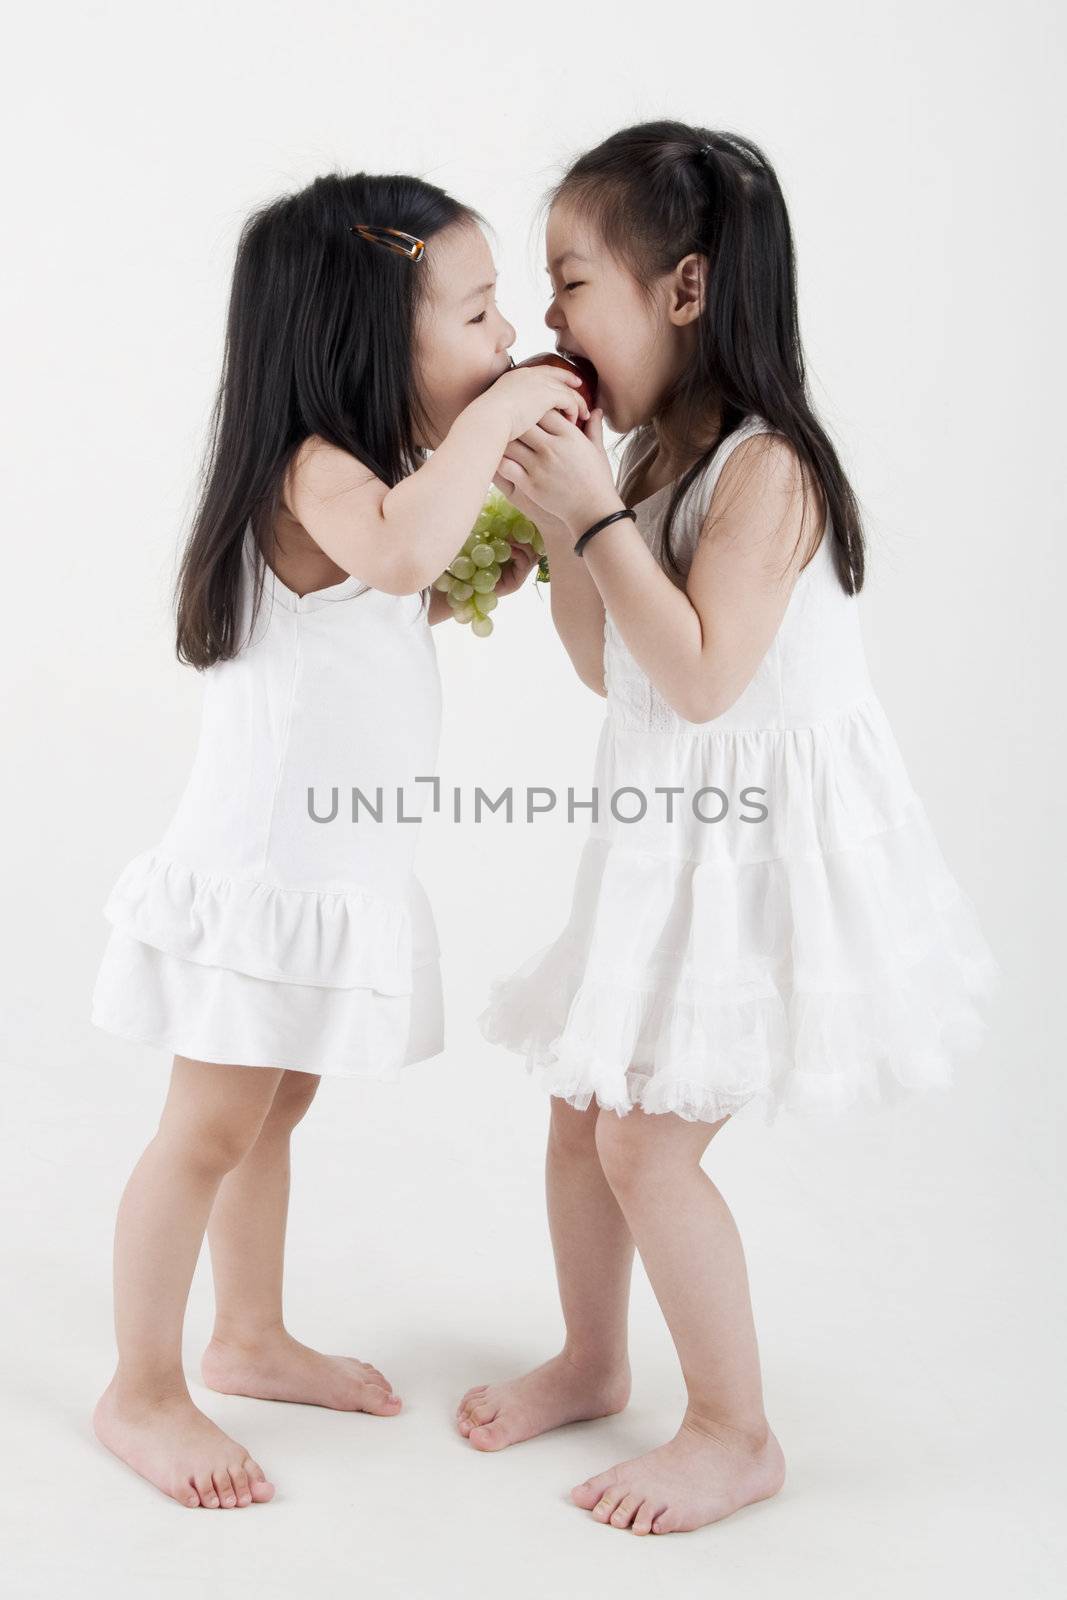 Two little girls sharing an apple